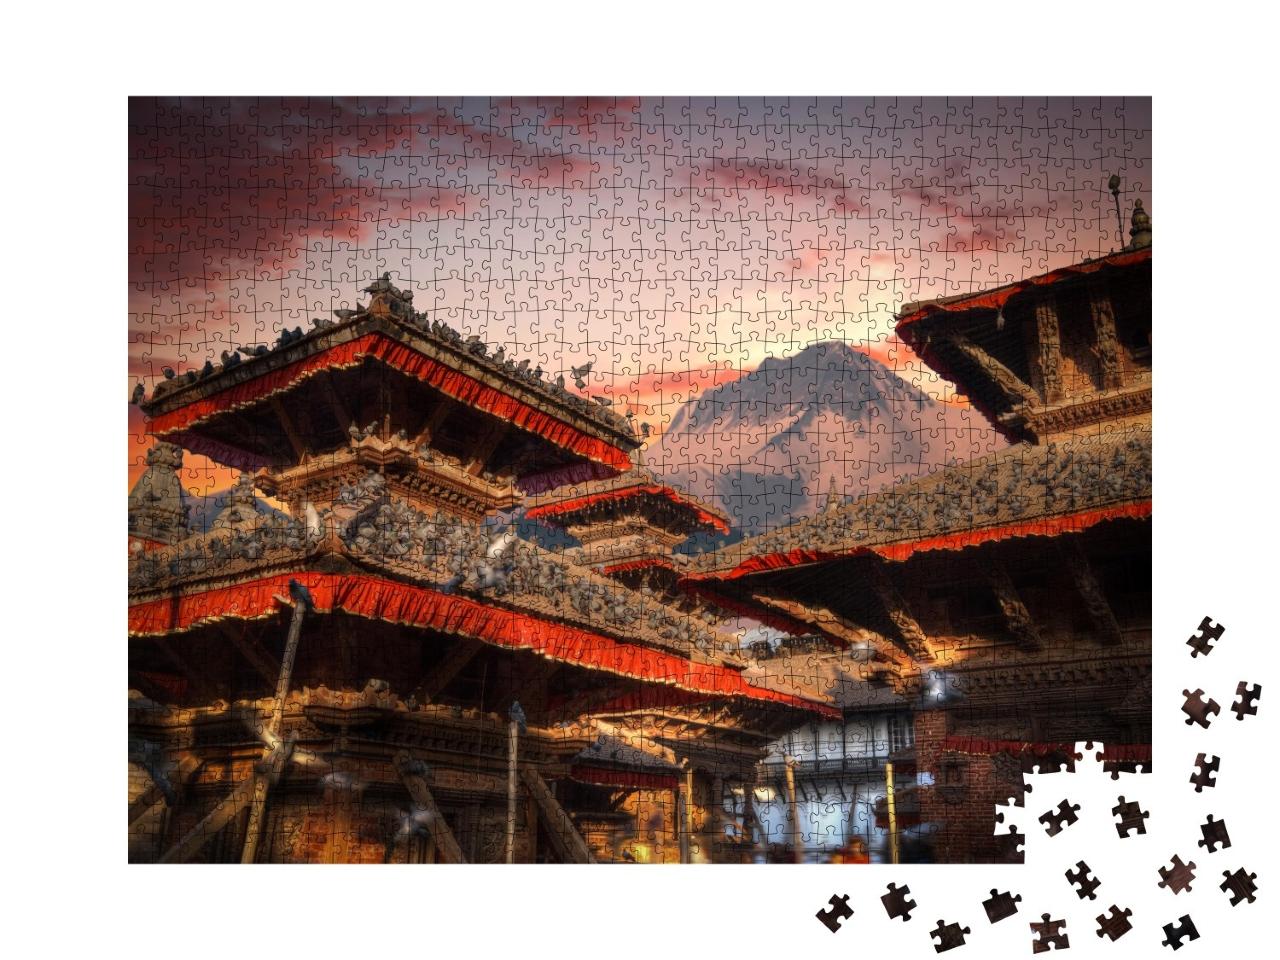 Puzzle de 1000 pièces « Soirée enchantée au temple de Durbar Square à Bhaktapur, Katmandou, Népal »